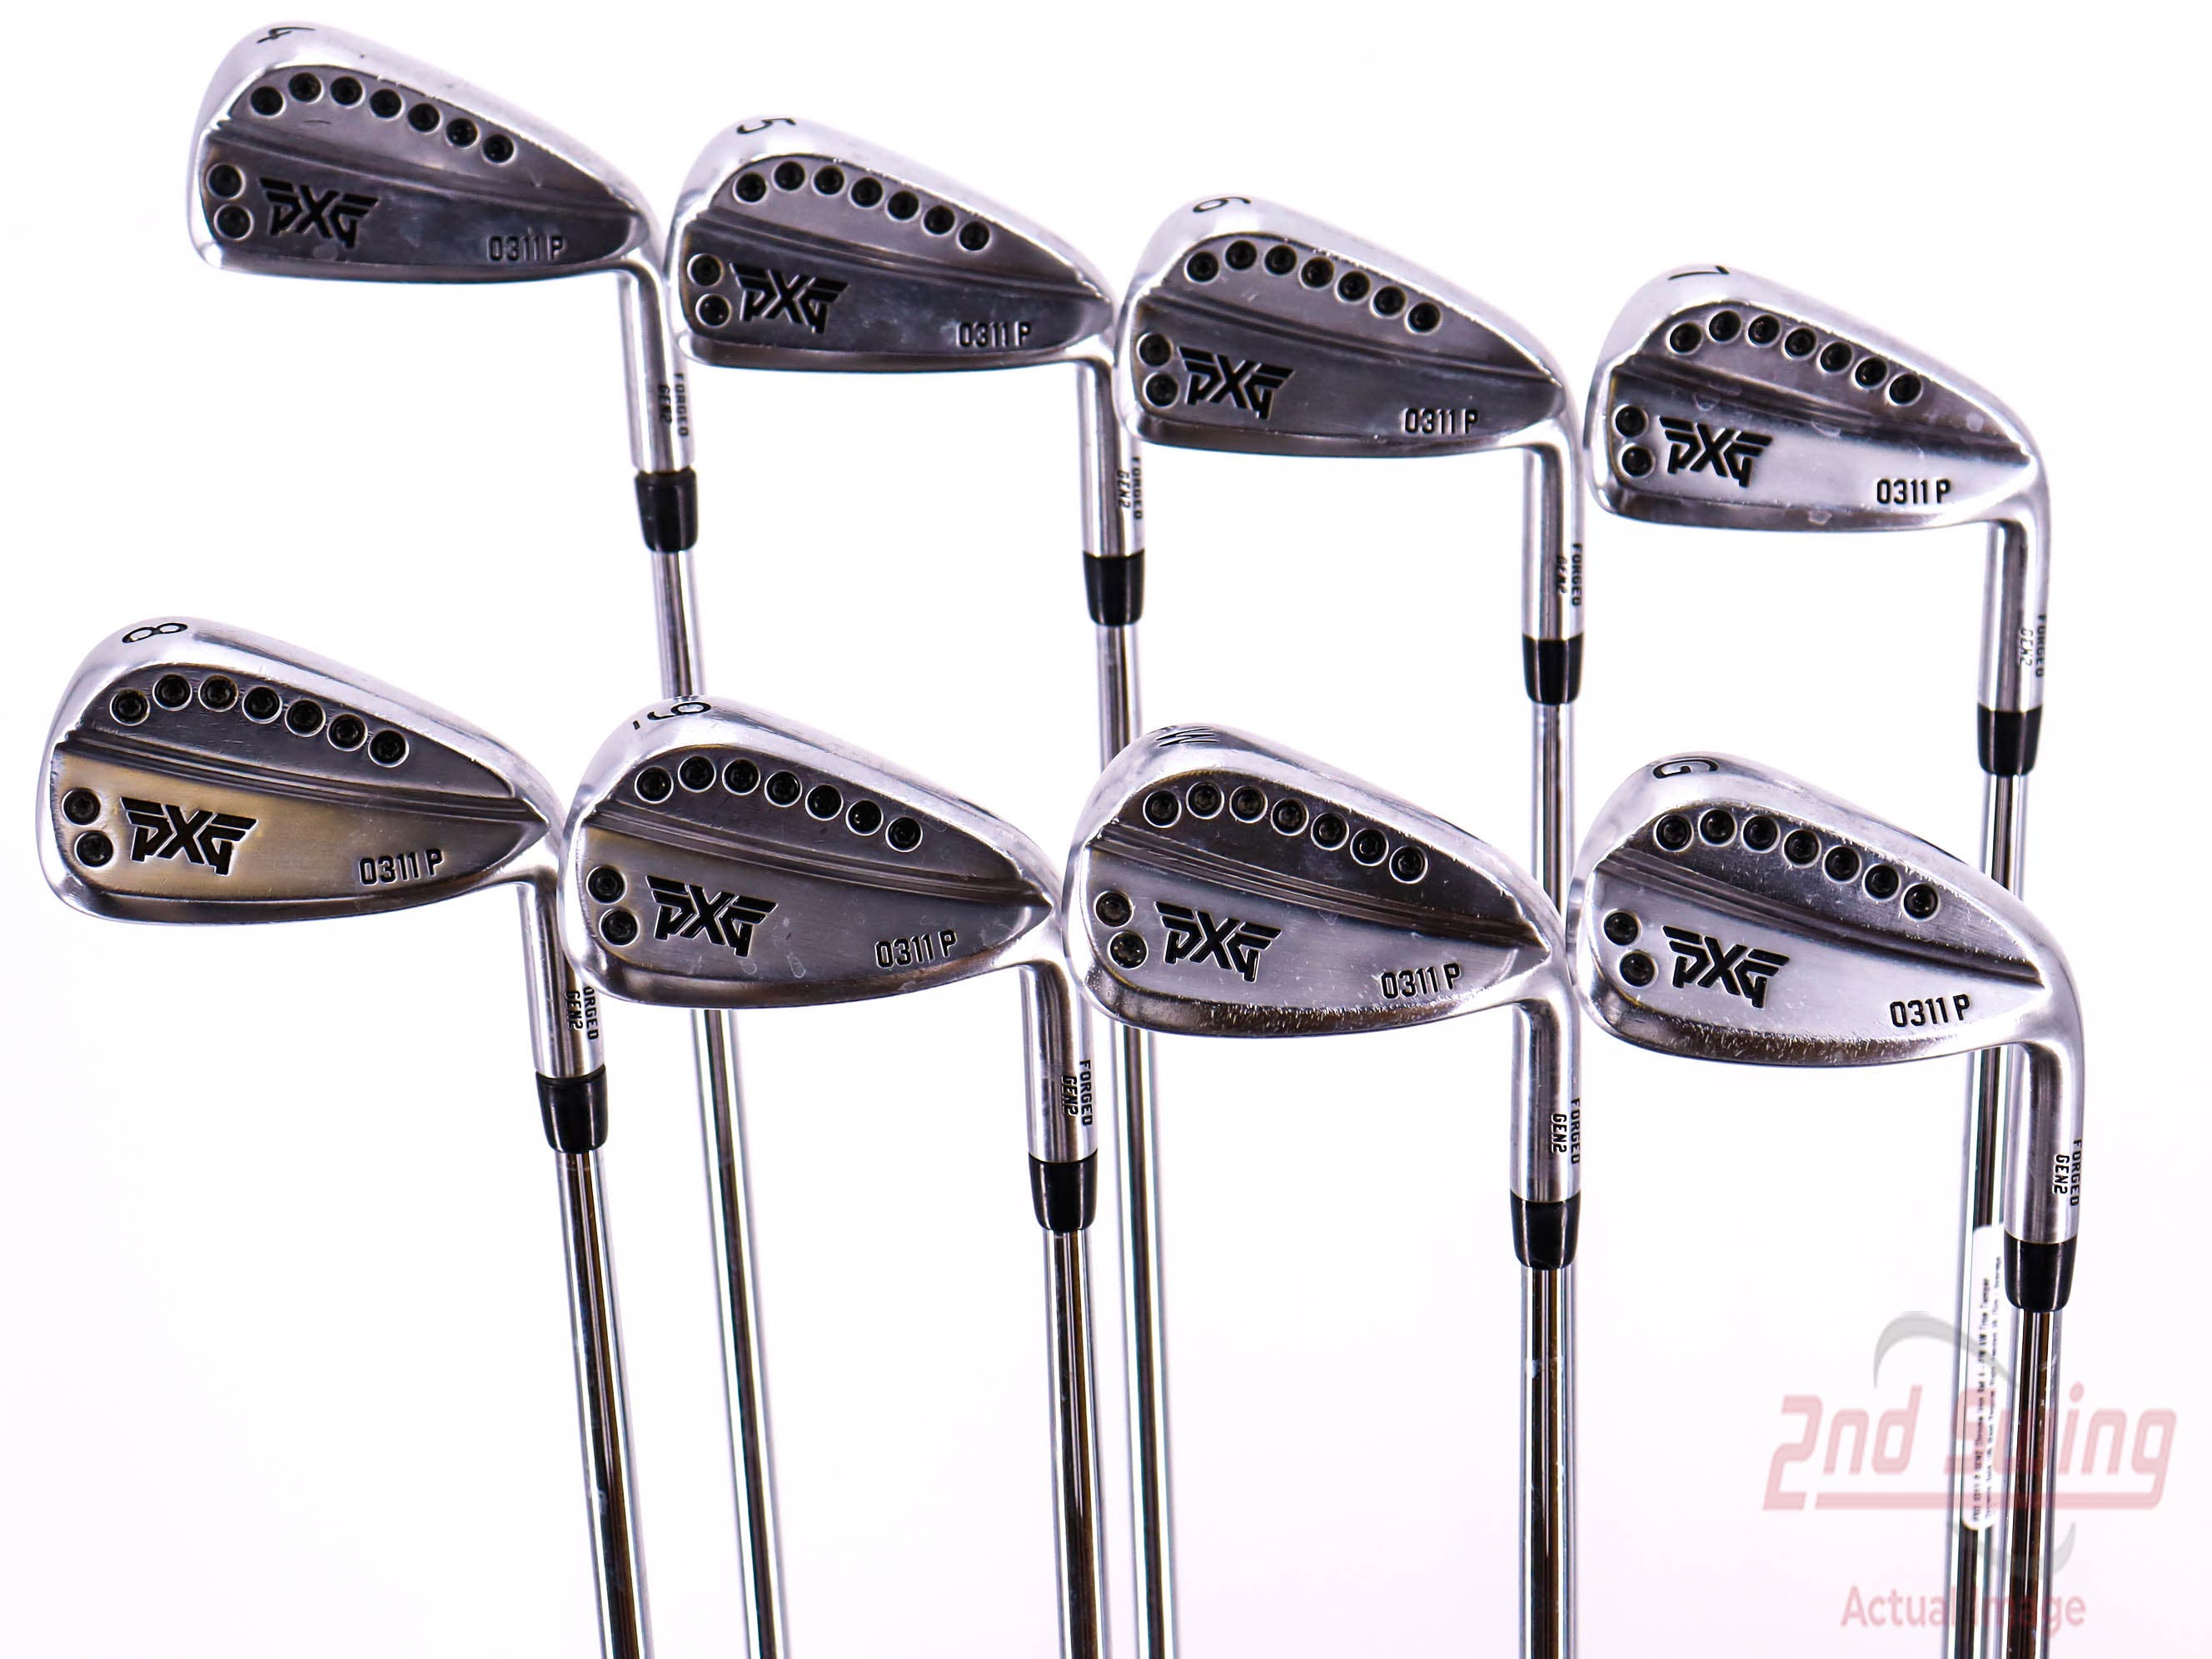 PXG 0311 P GEN2 Chrome Iron Set | 2nd Swing Golf